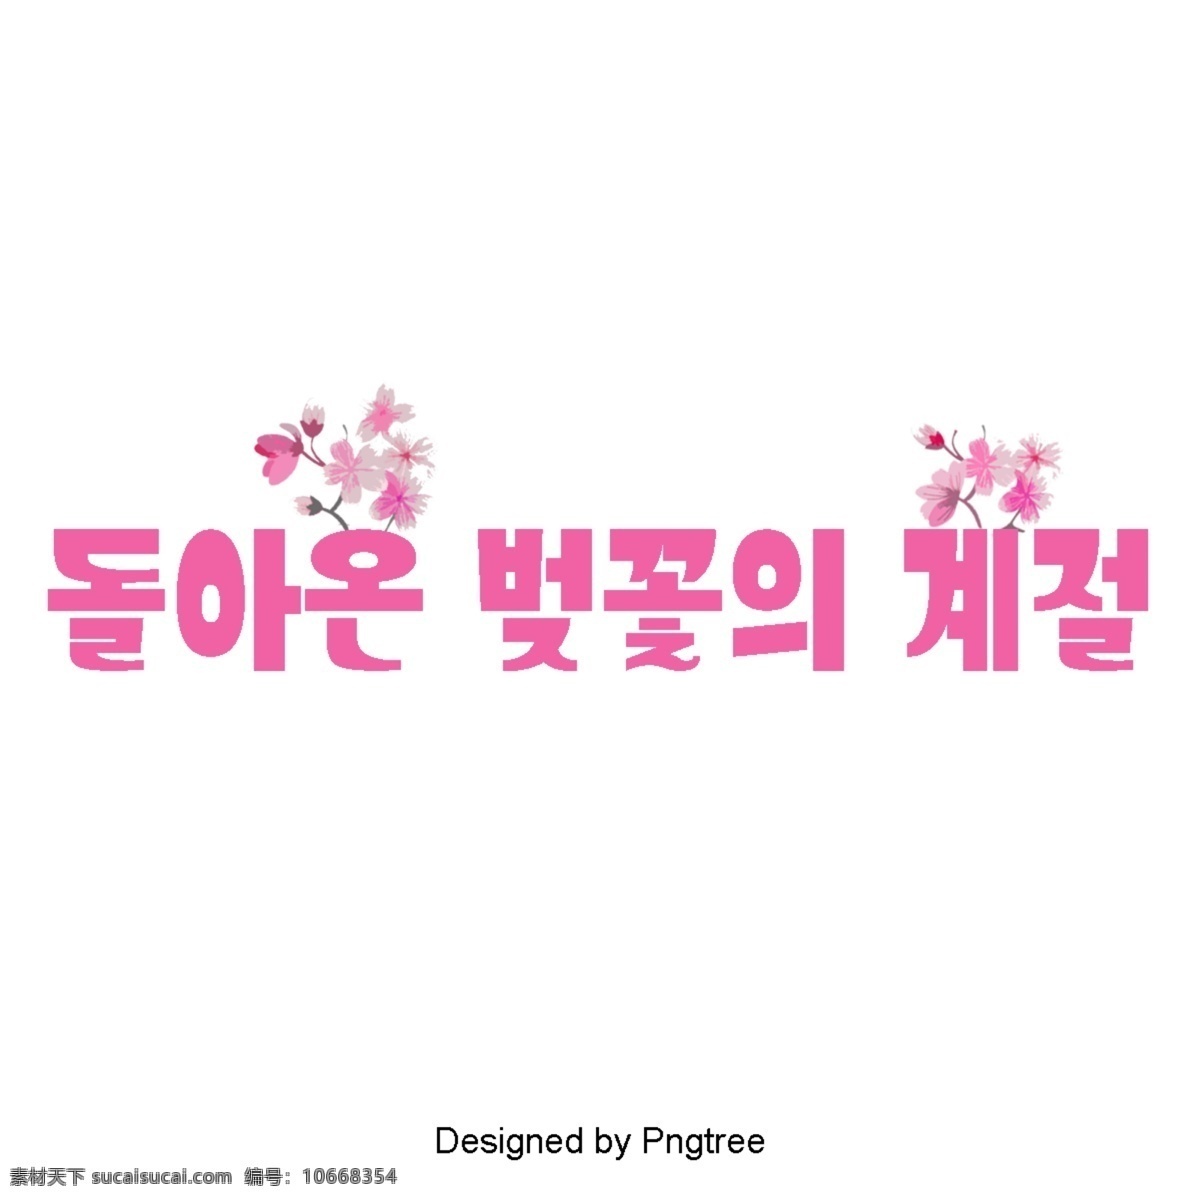 粉红色 樱花 季节 现场 粉 韩国人物 韩文 字形 图标 可爱 向量